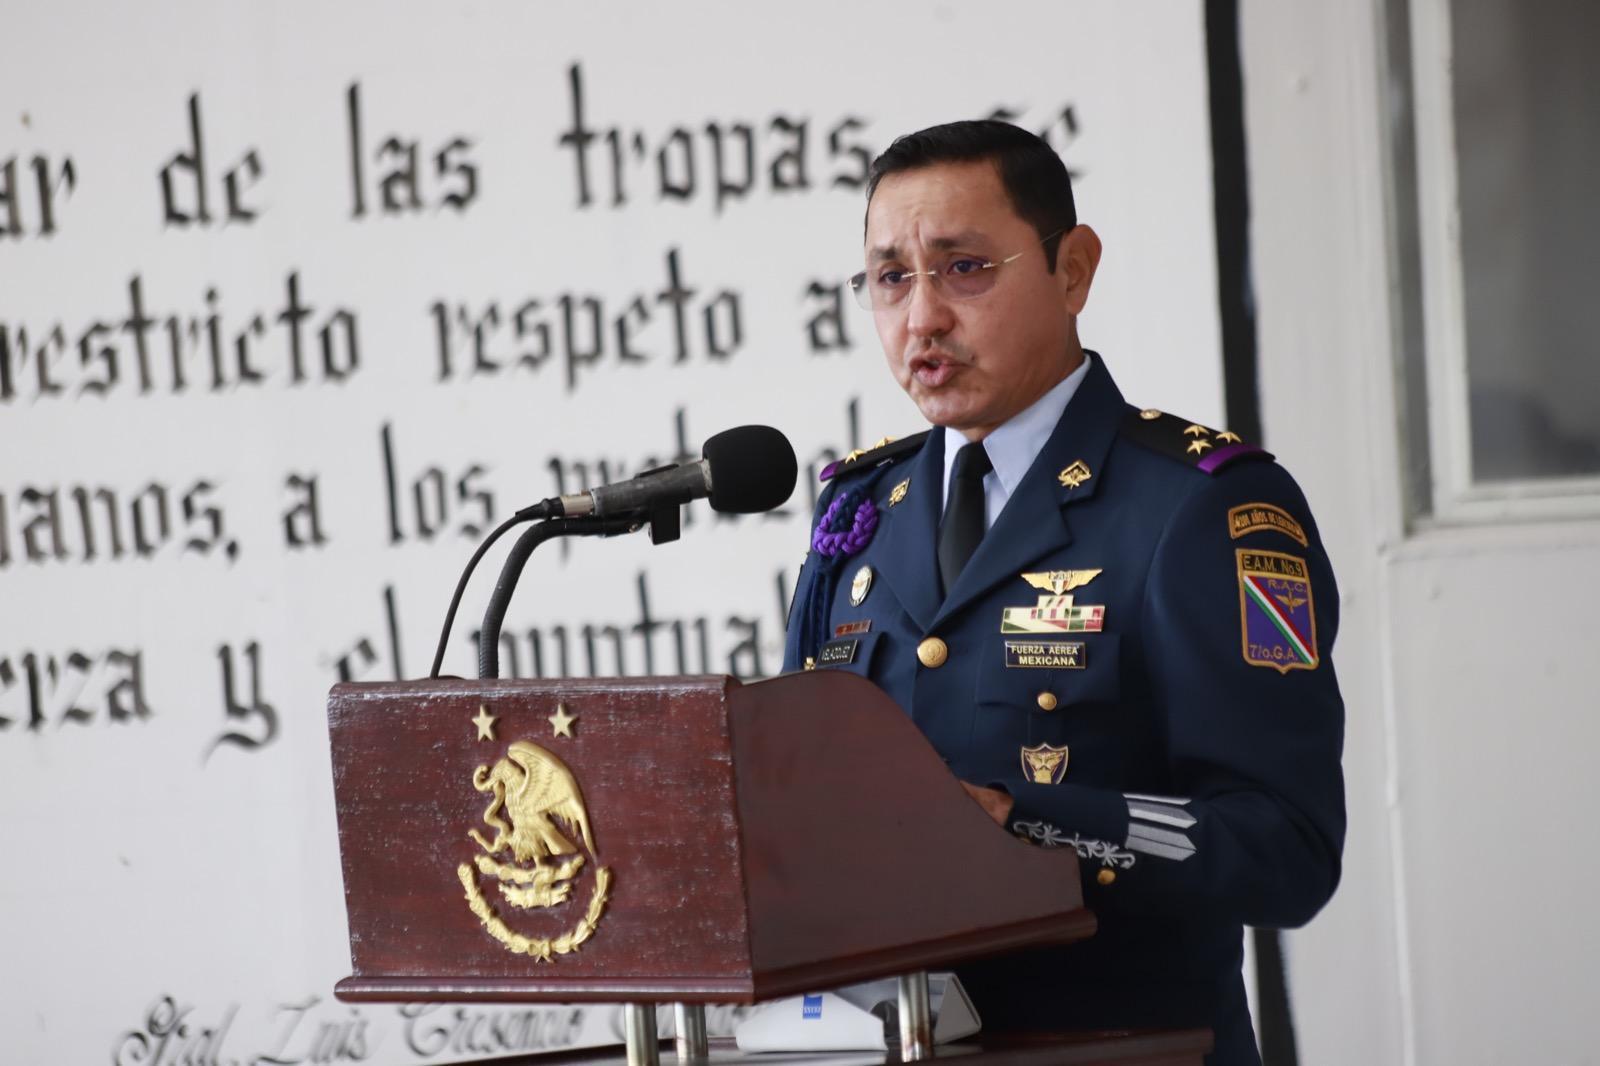 Gobierno del estado participó en el CVIII Aniversario de la creación de la fuerza aérea mexicana